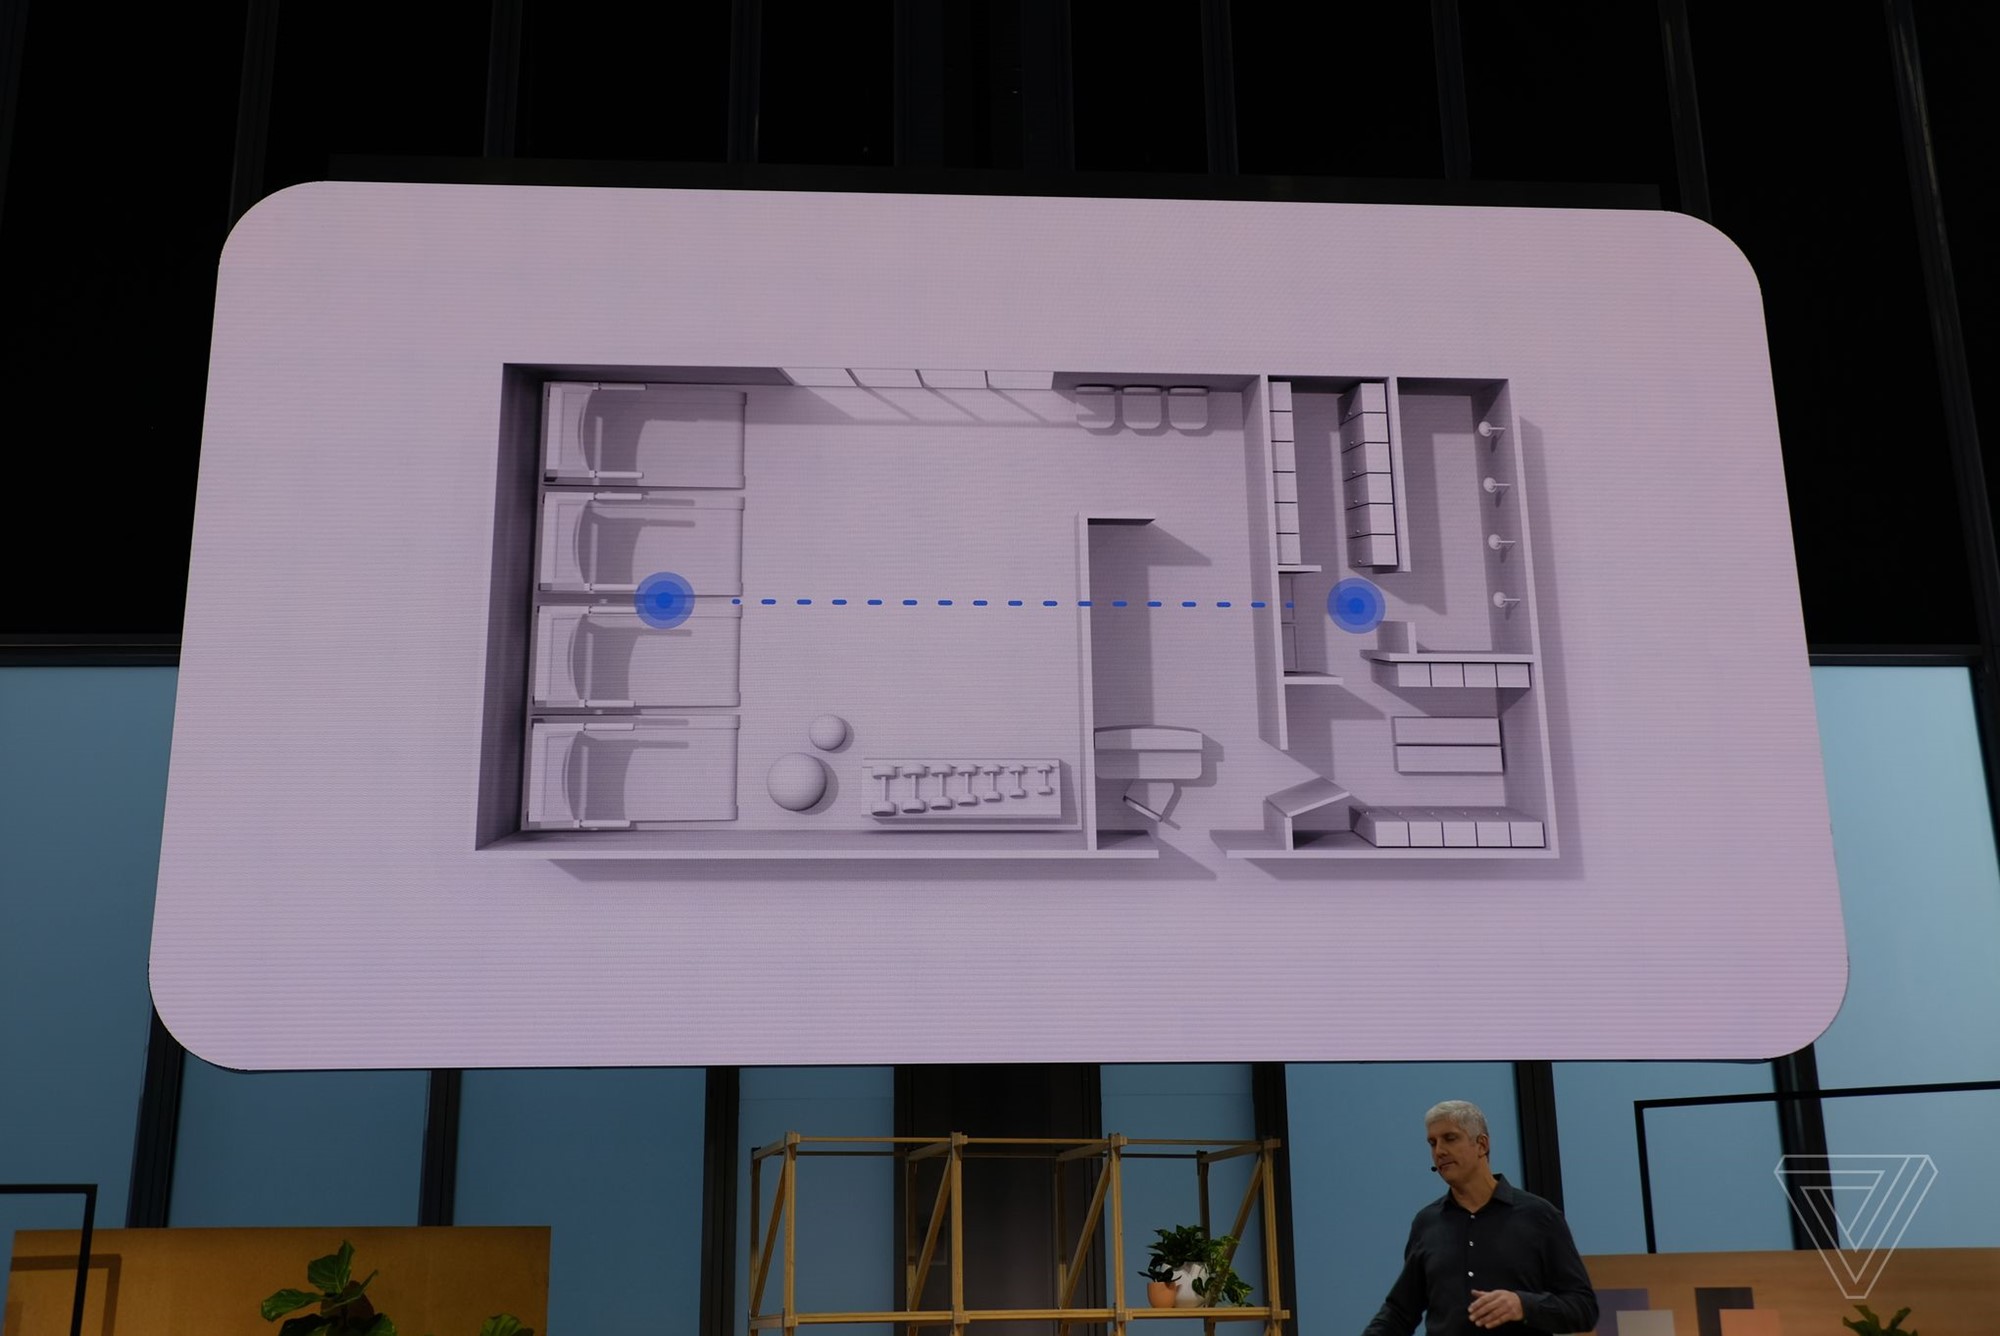 Google ra mắt tai nghe True wireless Pixel Buds
2: Hỗ trợ Google Assistant, tầm kết nối xa, pin 5 tiếng, giá
4.1 triệu đồng